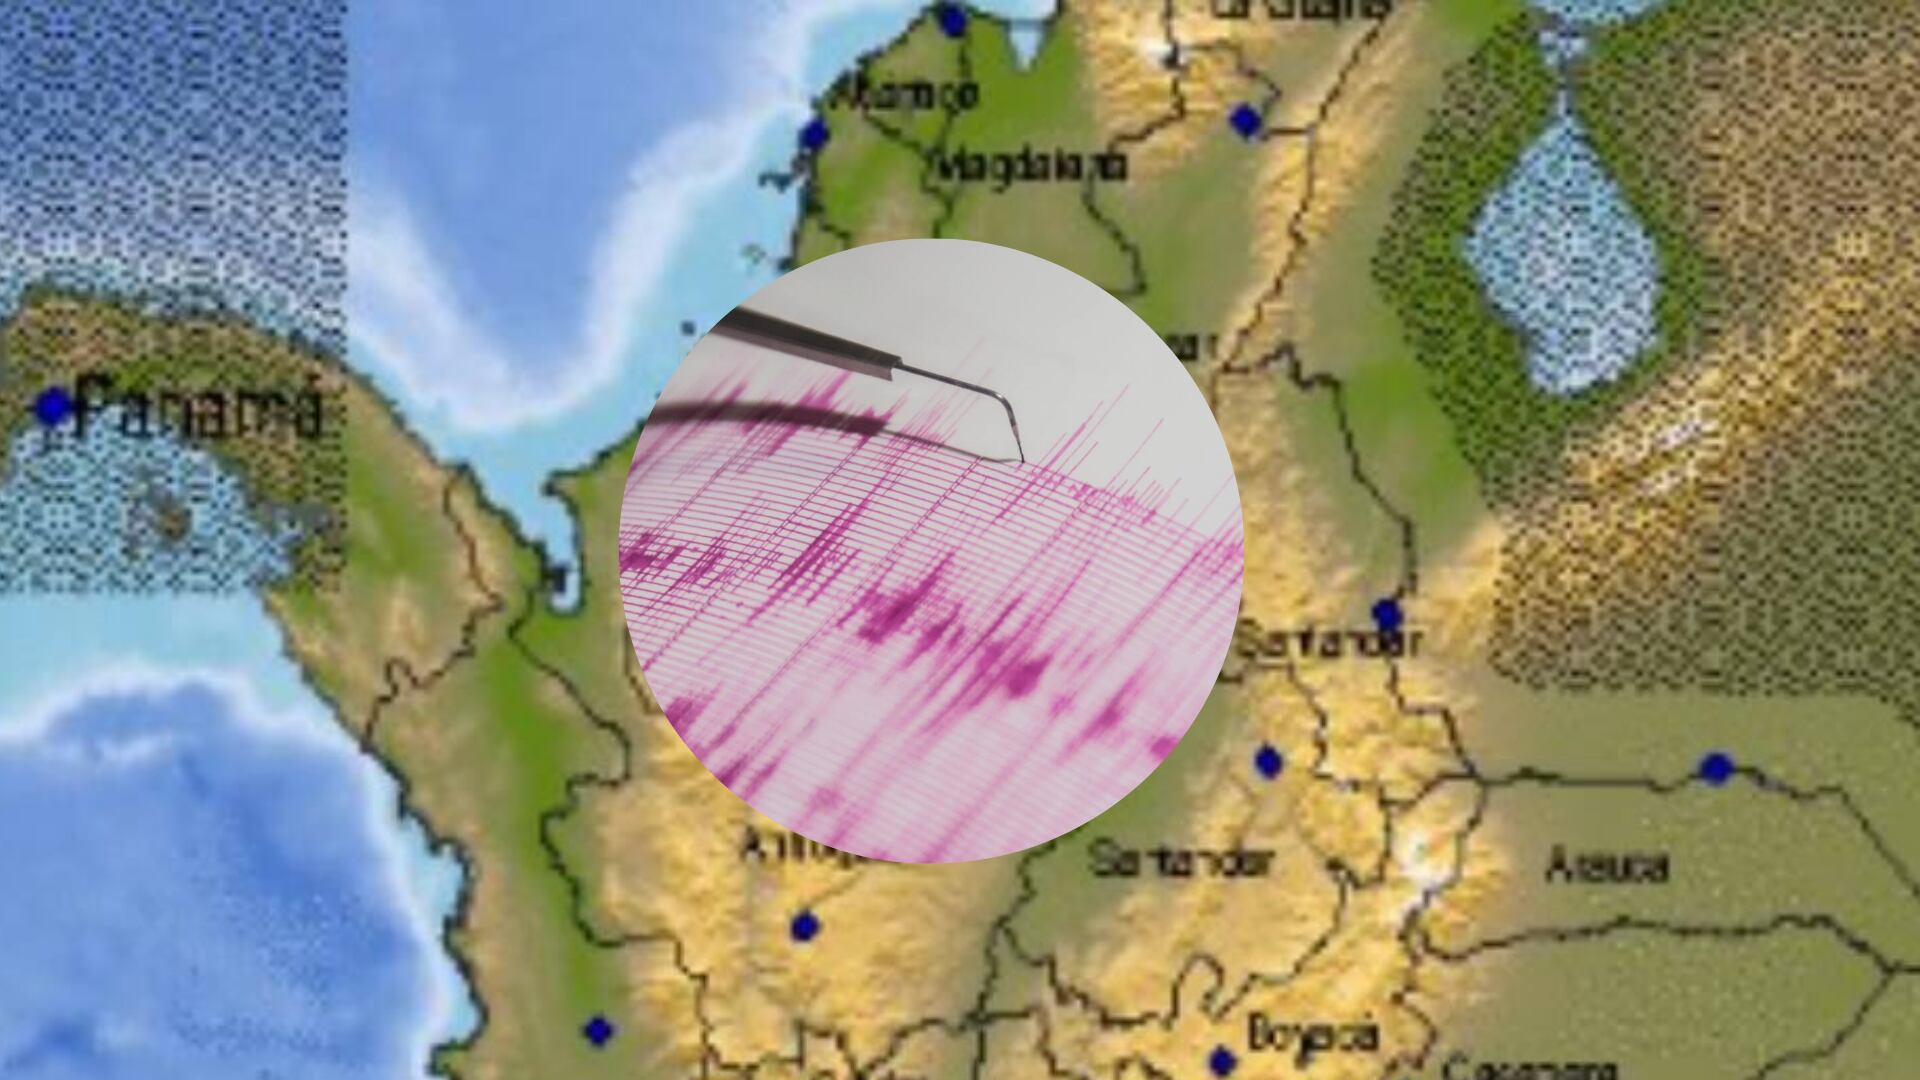 temblores en colombia y el mundo hoy 19 de abril: epicentro, magnitud y zonas afectadas